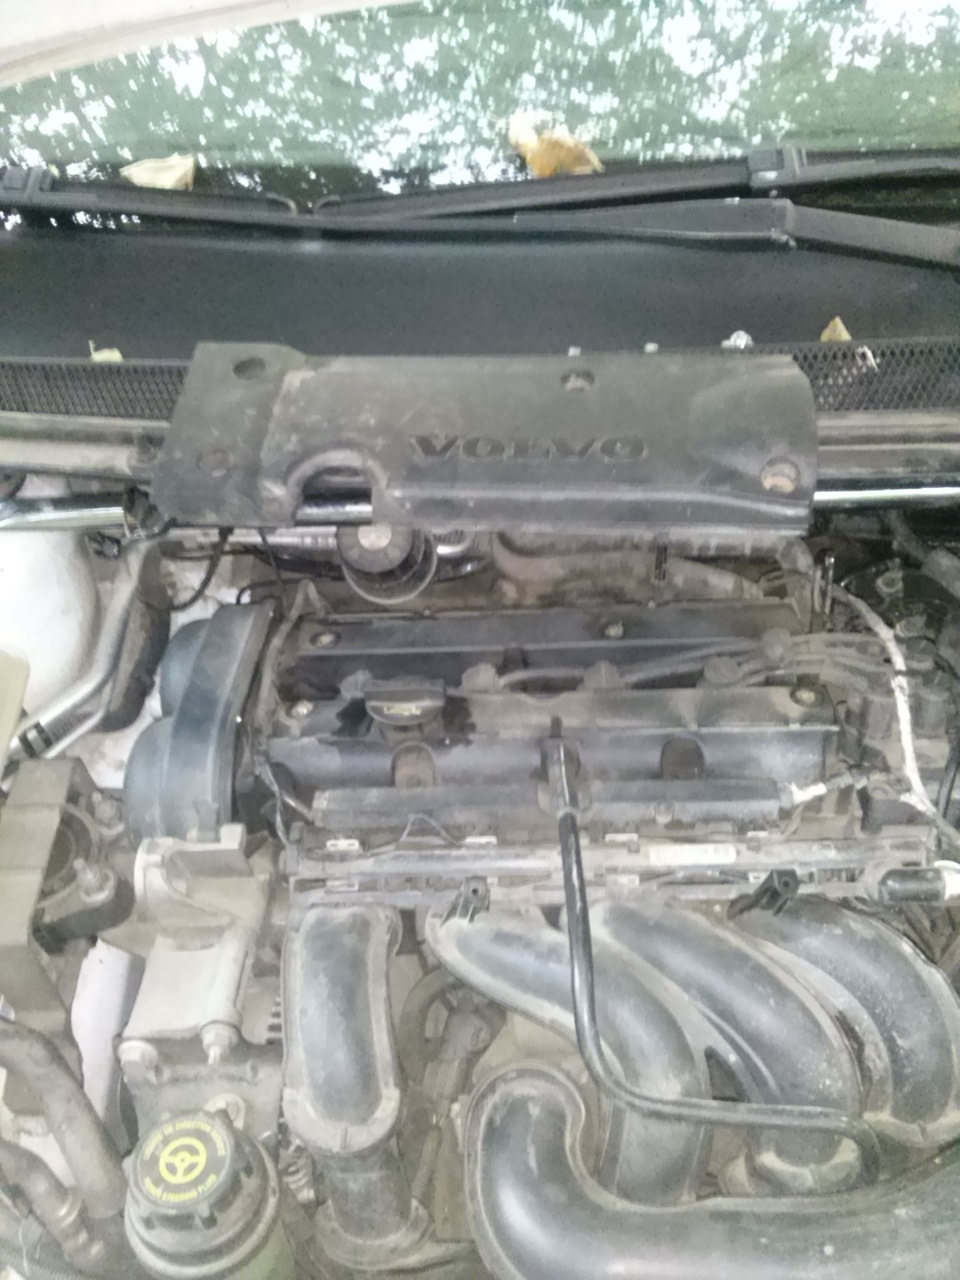 Форд Мондео 2015, 2.5 л., бензиновый двигатель, акпп, цвет ...